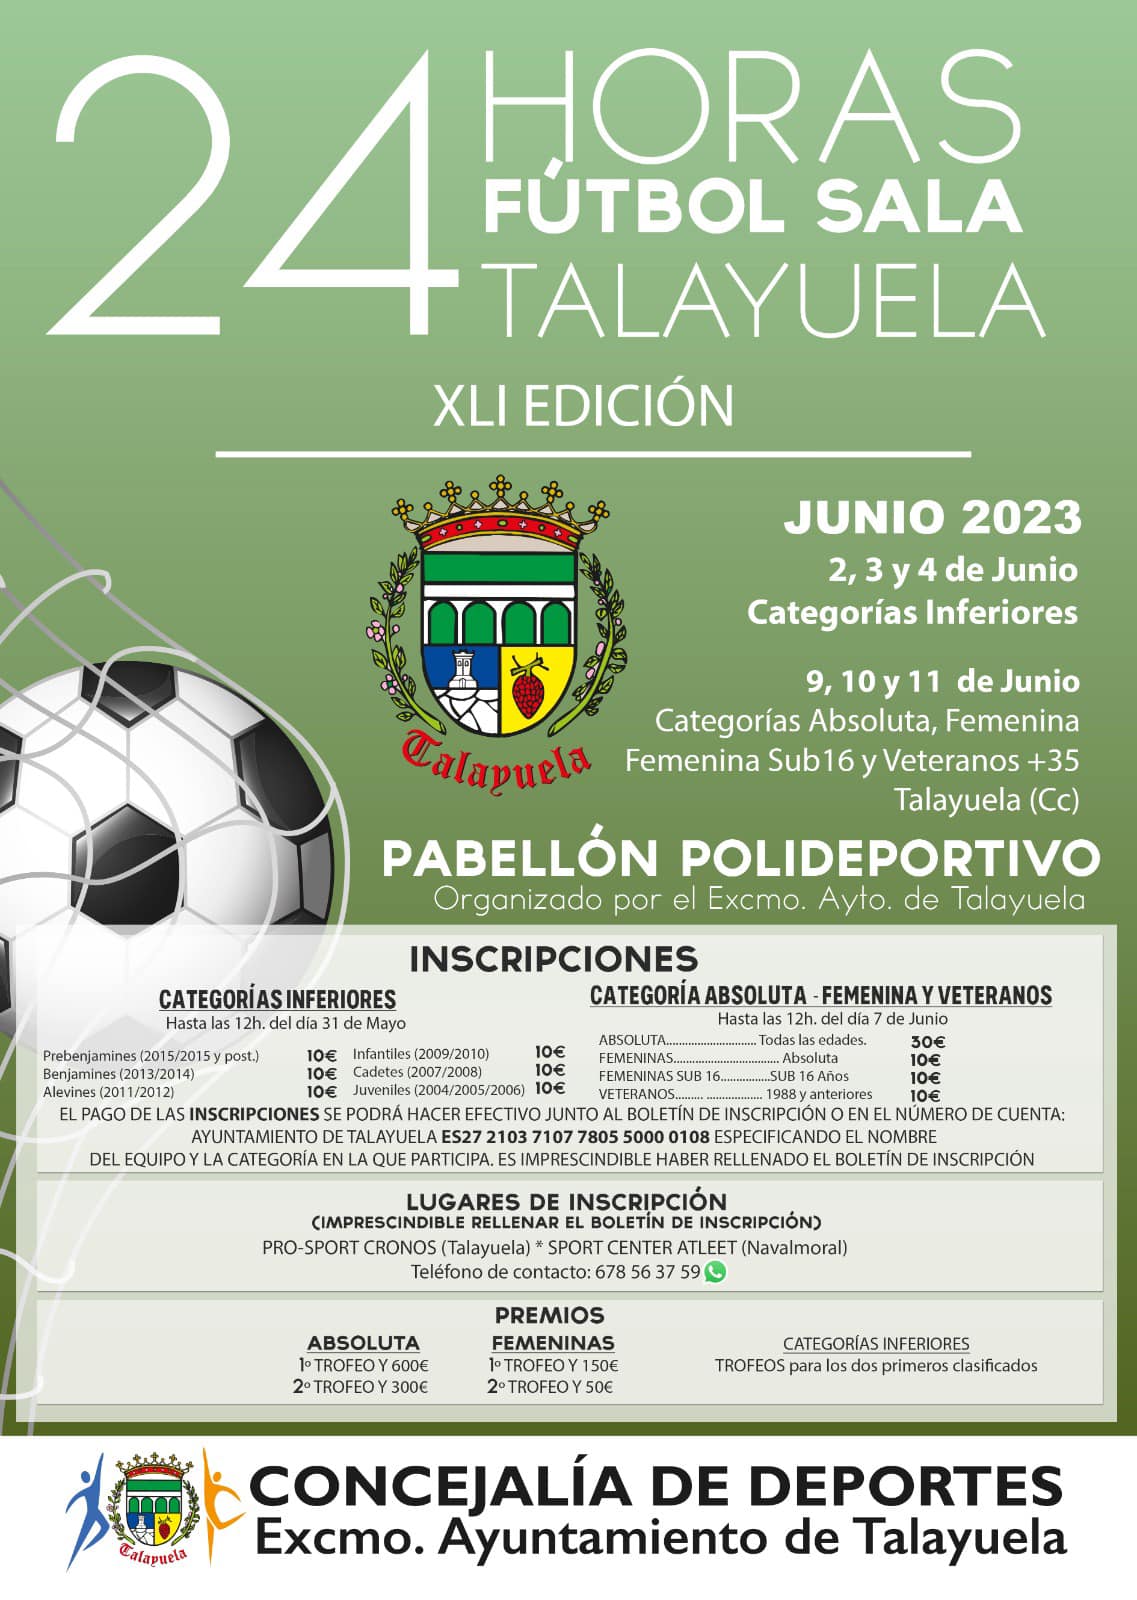 24 horas de fútbol sala (2023) - Talayuela (Cáceres)